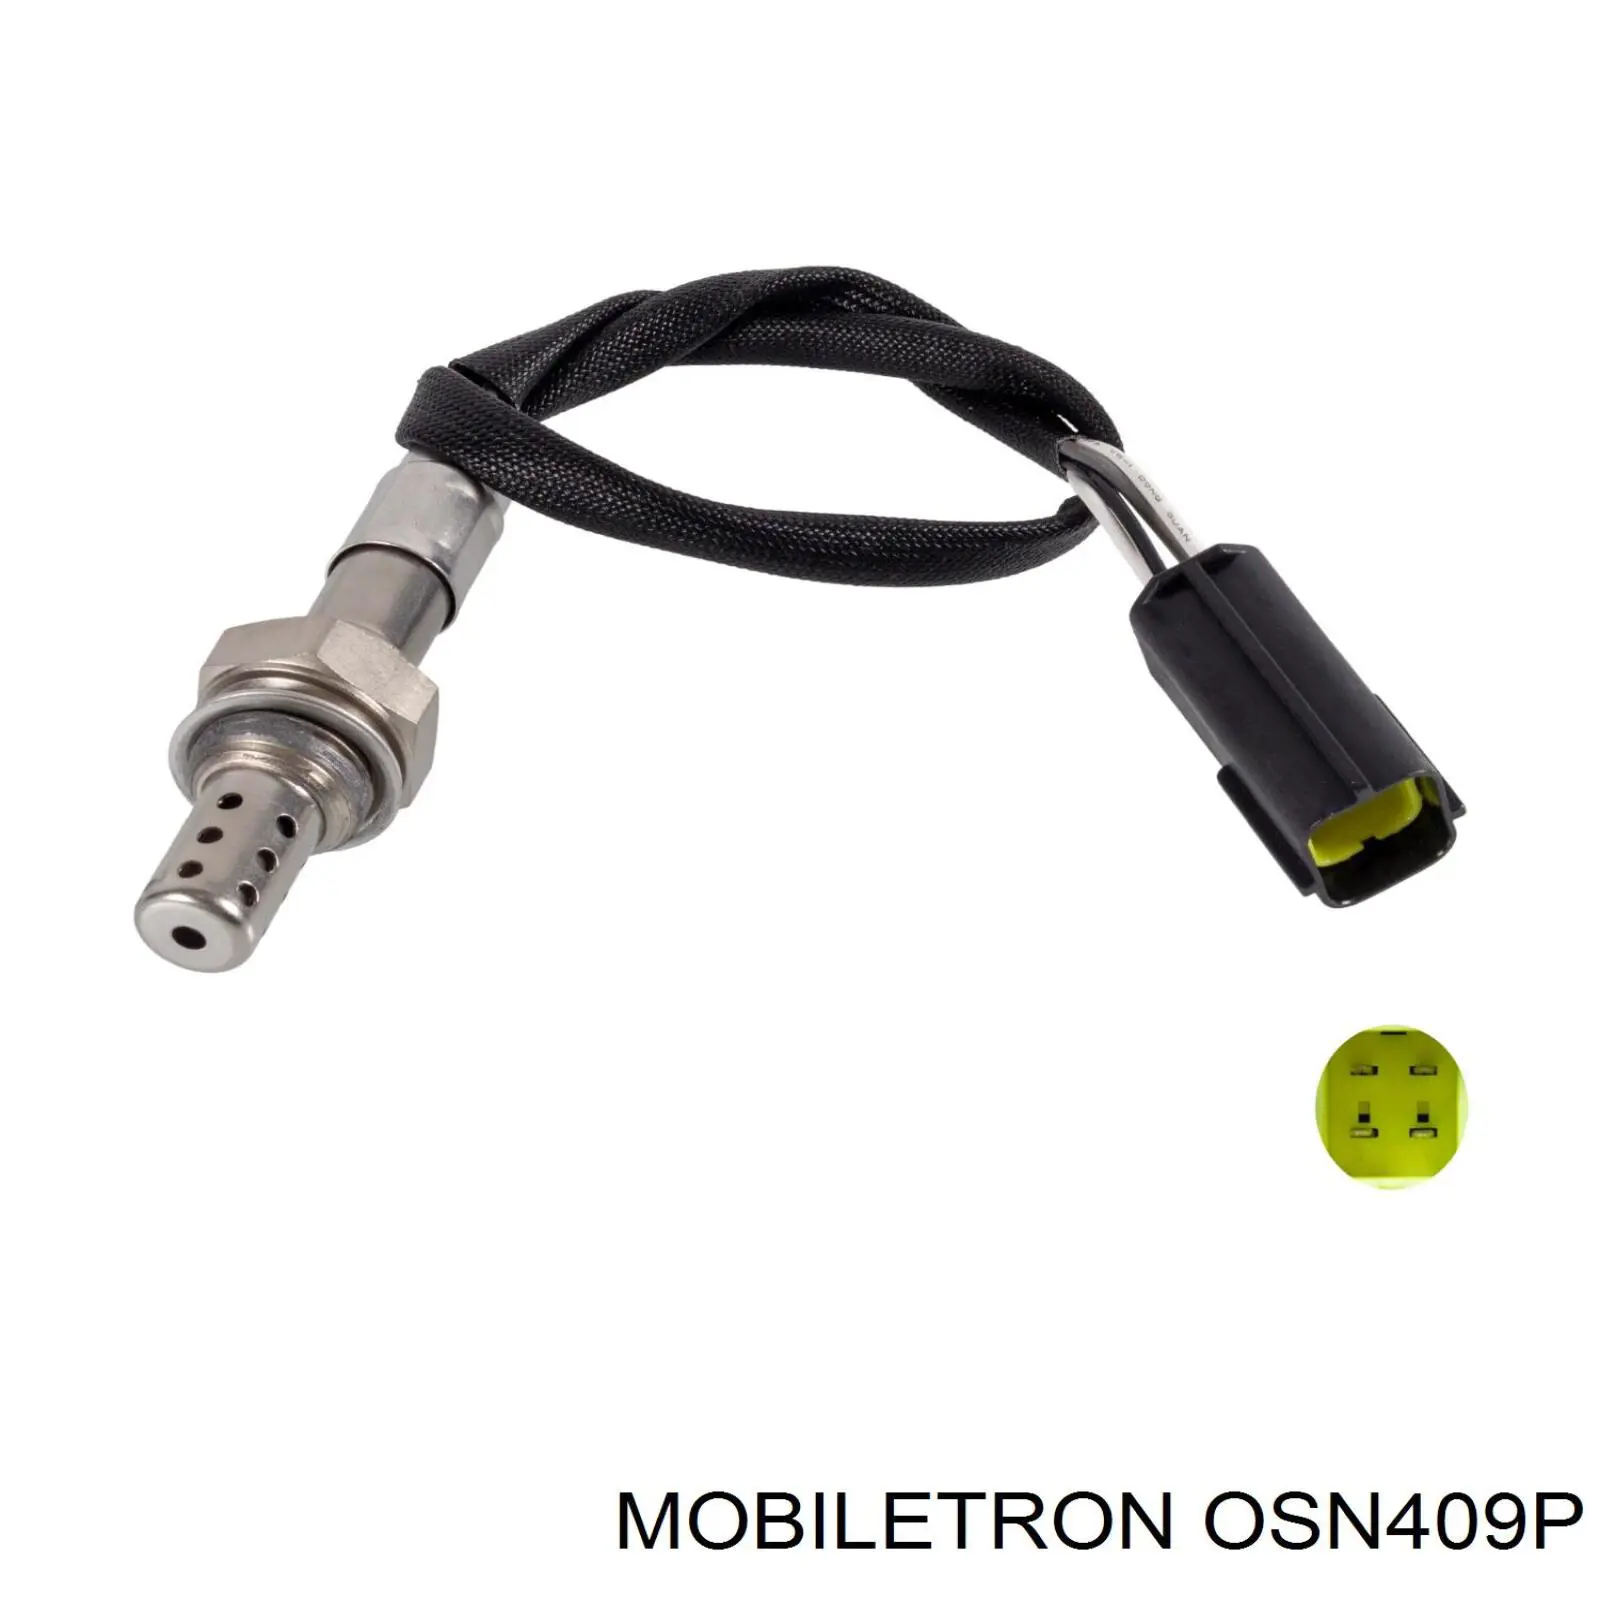 OS-N409P Mobiletron sonda lambda sensor de oxigeno para catalizador